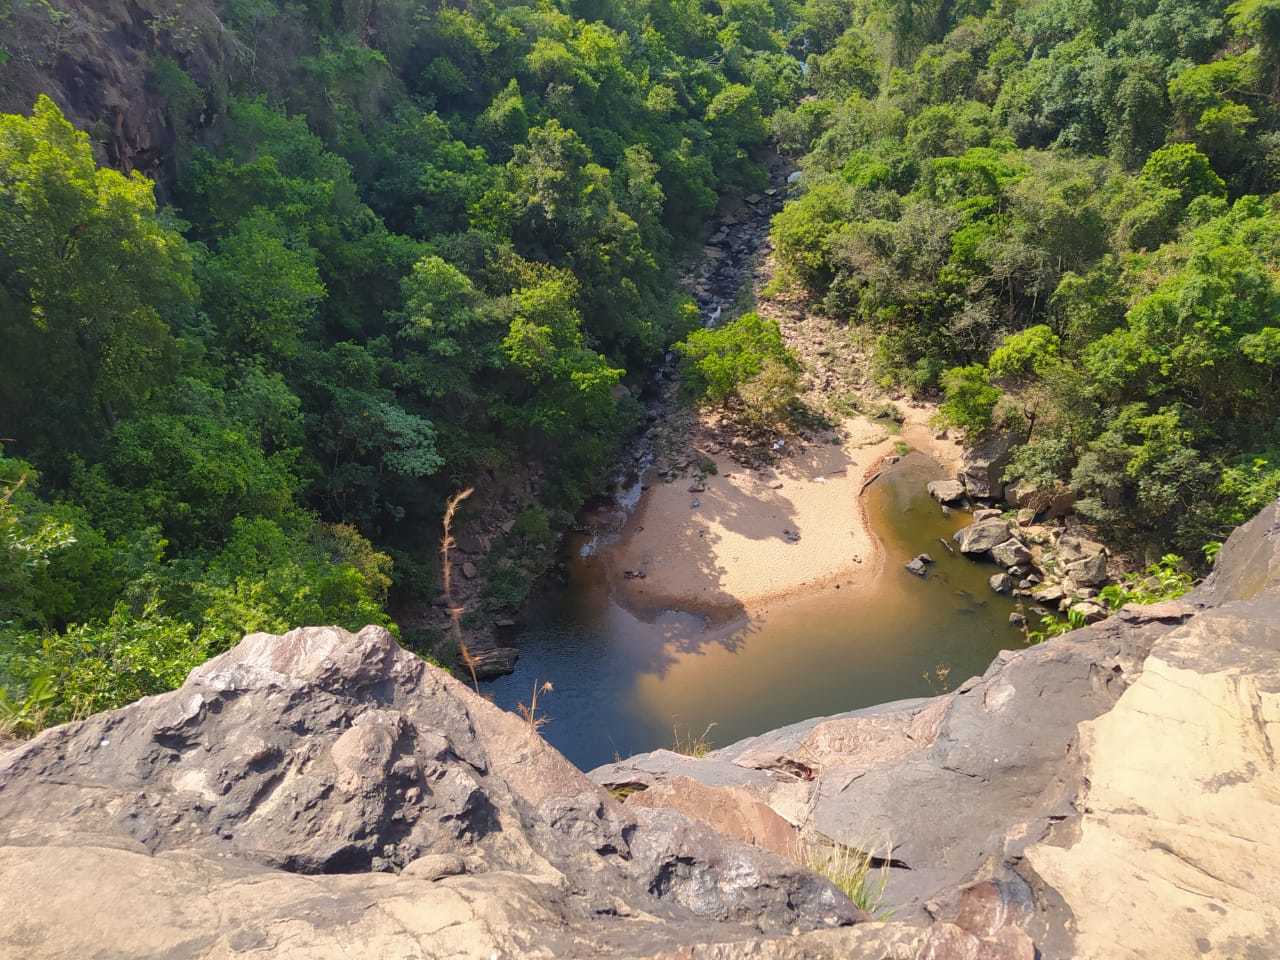 Cachoeira do Rio do Peixe vista de cima, ponto de caída da água que está seco. (Foto: Jaqueline Cristina / Direto das Ruas)